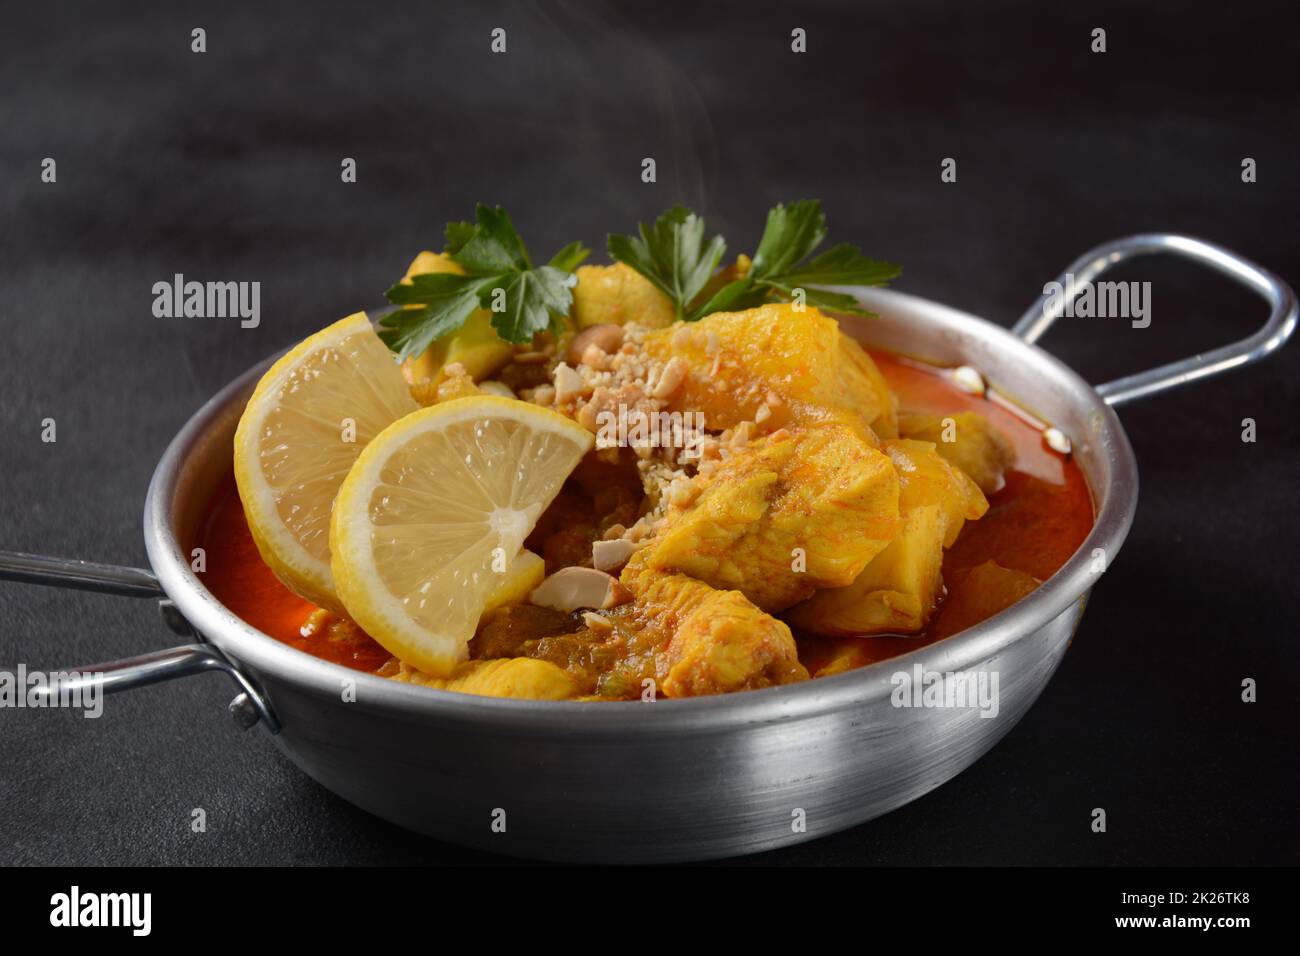 Ein Chicken Massaman Curry in schwarzer Schüssel auf dunklem Hintergrund. Massaman Curry ist das beste thailändische Gericht mit Hühnerfleisch, Kartoffeln, Zwiebeln und vielen Gewürzen, das von malaiischen und thailändischen muslimischen Kulturen beeinflusst wird. Stockfoto